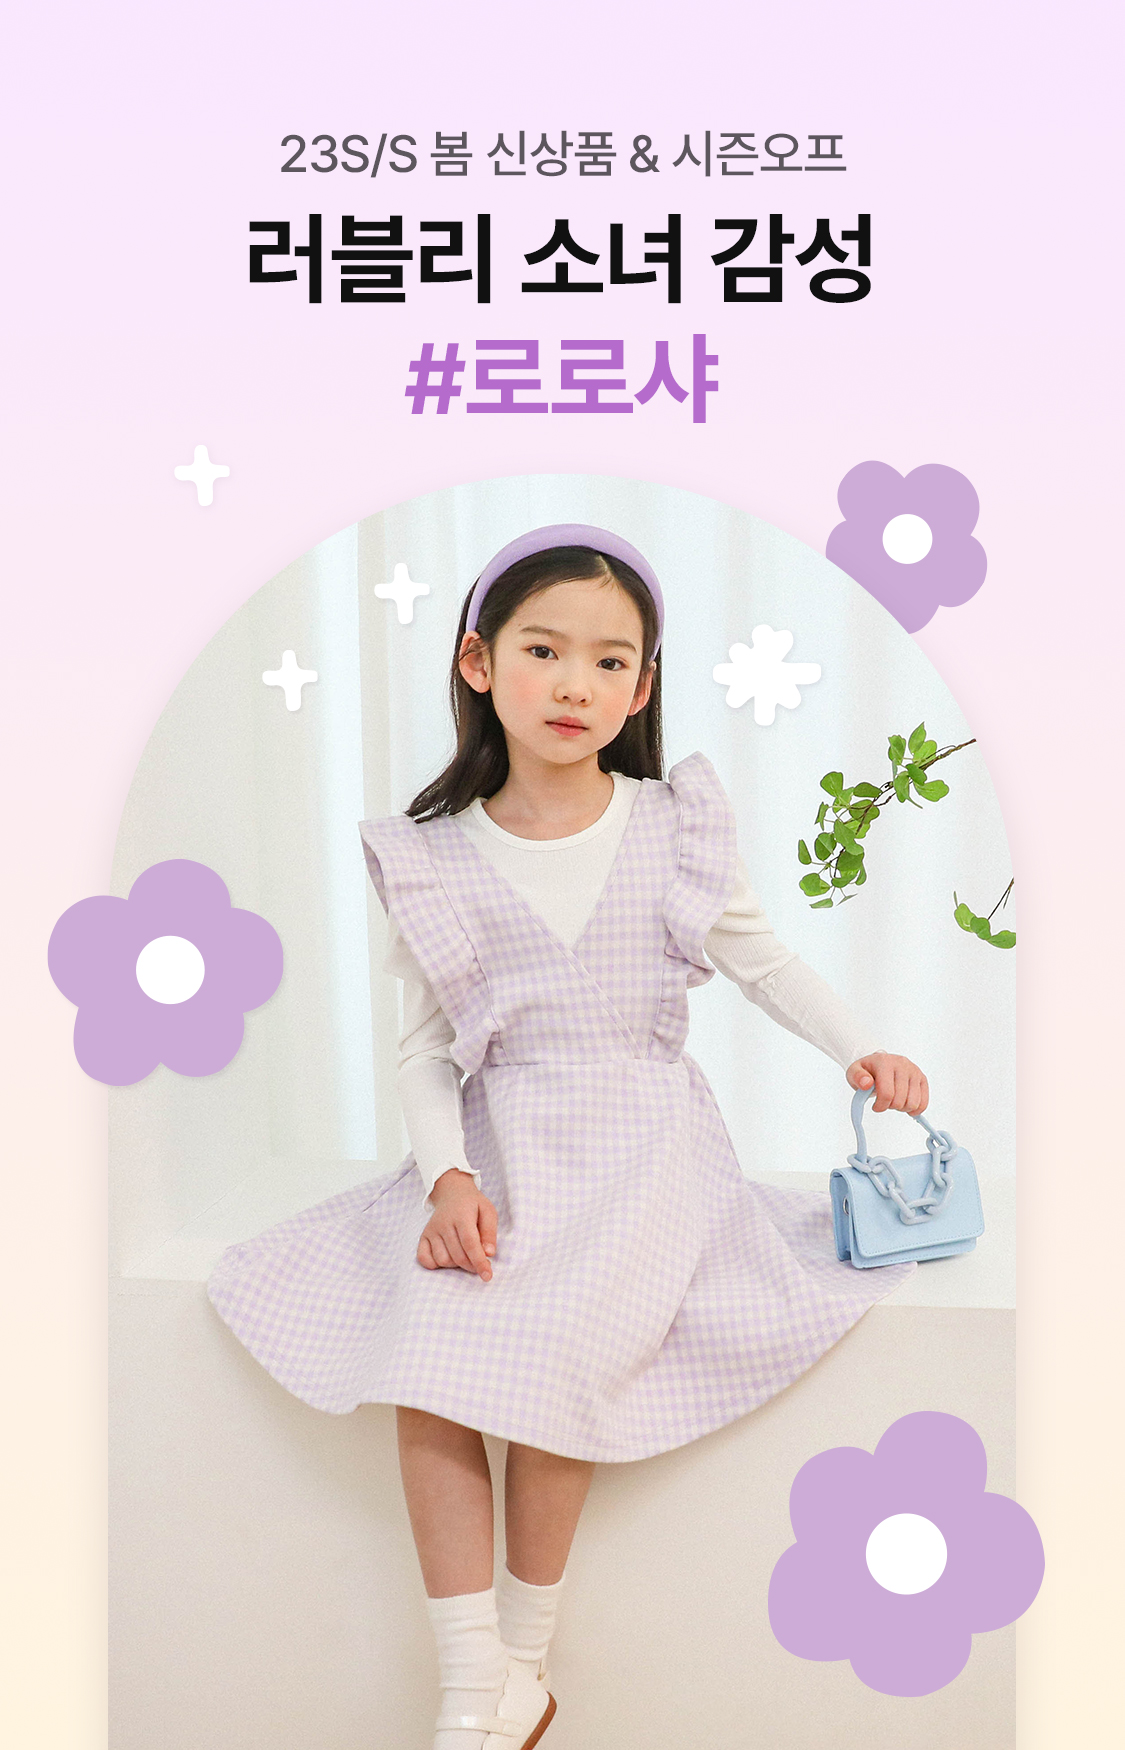 23S/S 봄 신상품 러블리 소녀 감성 #로로샤